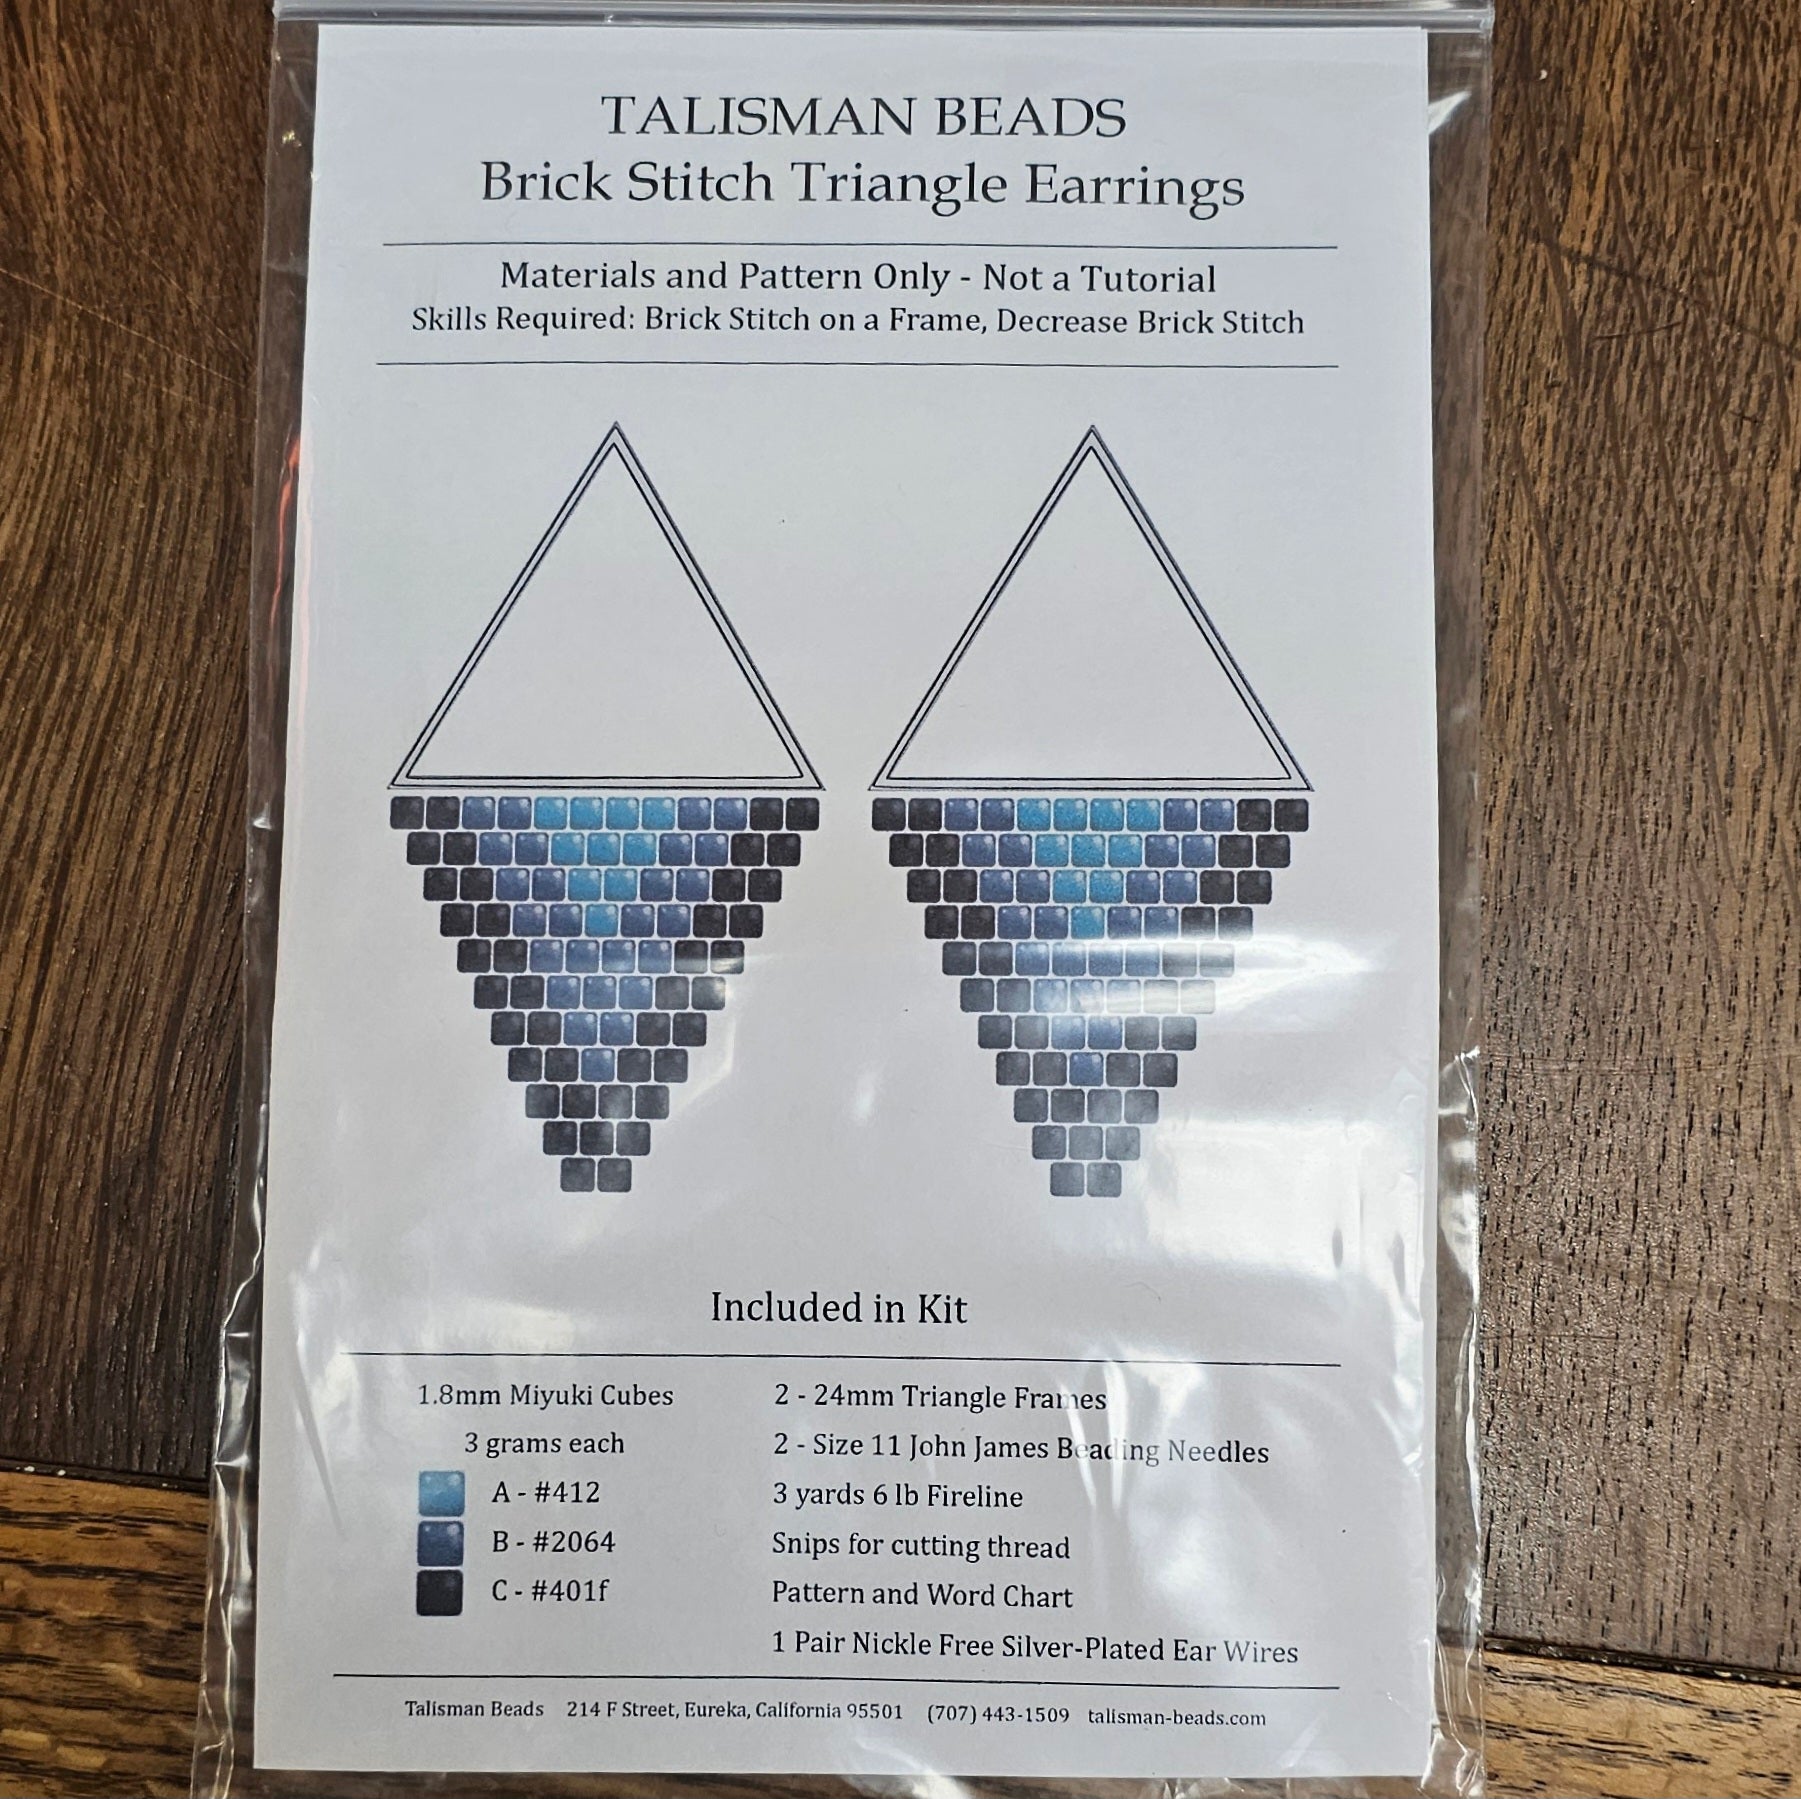 Kit - Brick Stitch Triangle Earring Kit - Turq/blk